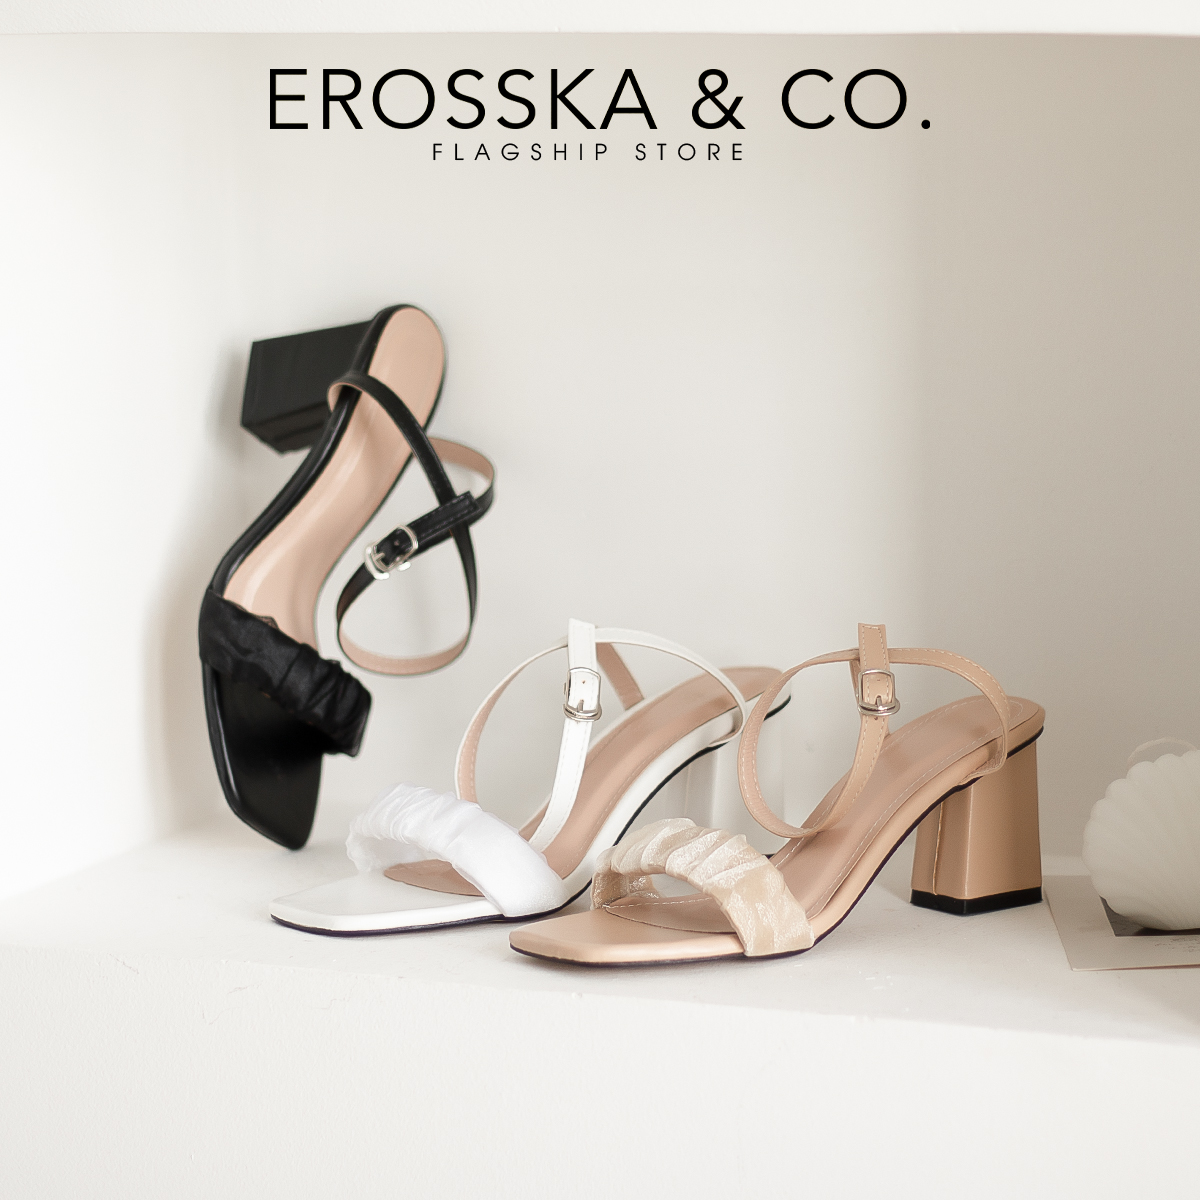 Erosska - Giày sandal cao gót nữ quai nhún lưới phối dây quai mảnh cao 7cm  - EB050